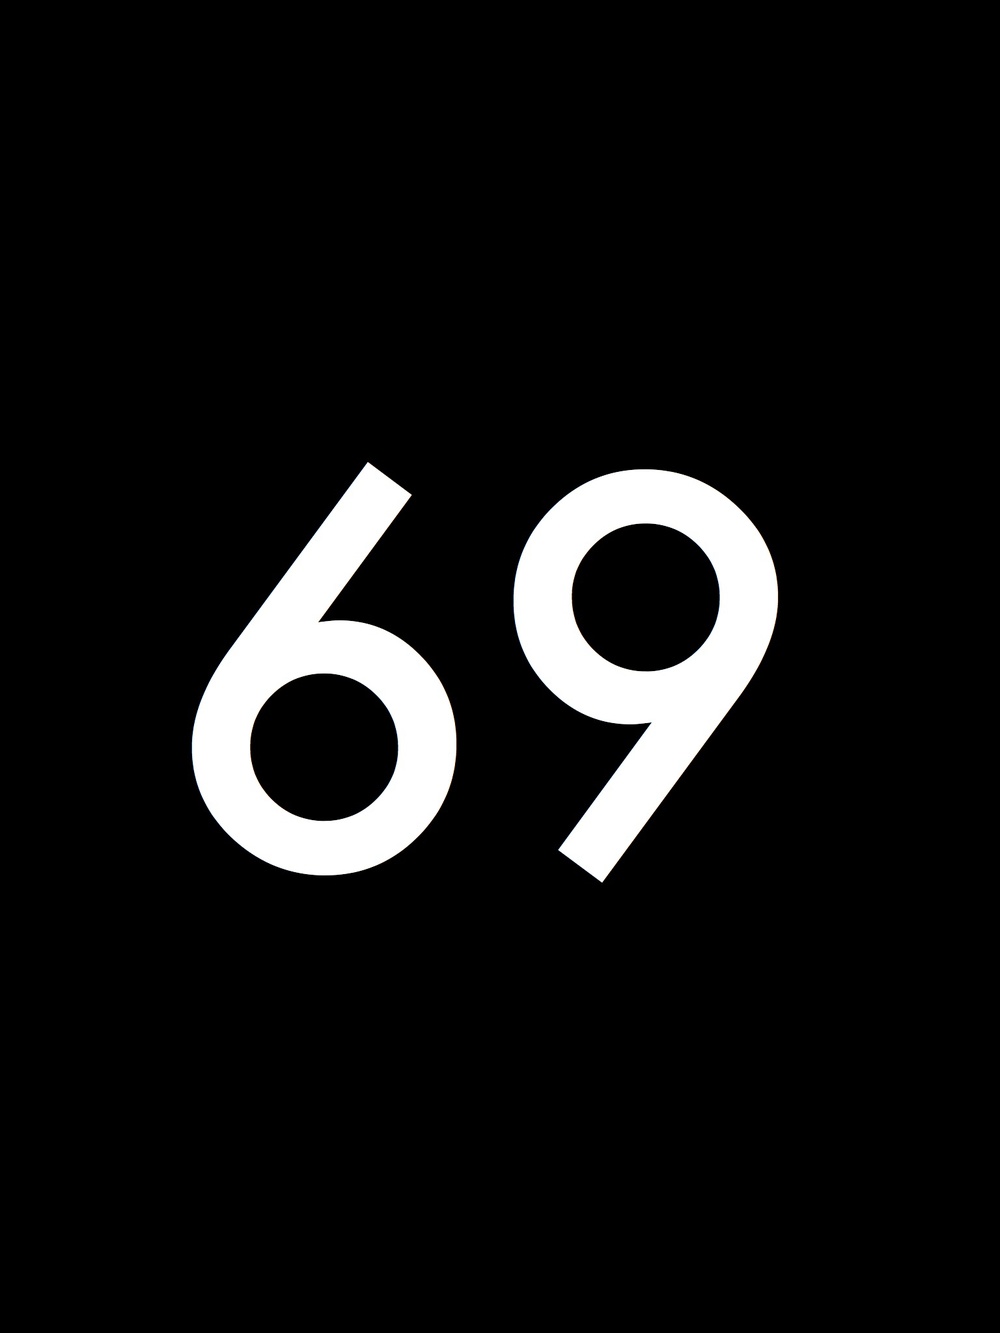 Hãy cùng đến với Wallpaper Cave và tìm hiểu những hình nền số 69 độc đáo và nổi bật. Số 69 luôn mang ý nghĩa đặc biệt và khiến cho hình nền trở nên thú vị hơn bao giờ hết. Hãy truy cập ngay để khám phá những hình nền số 69 độc đáo!